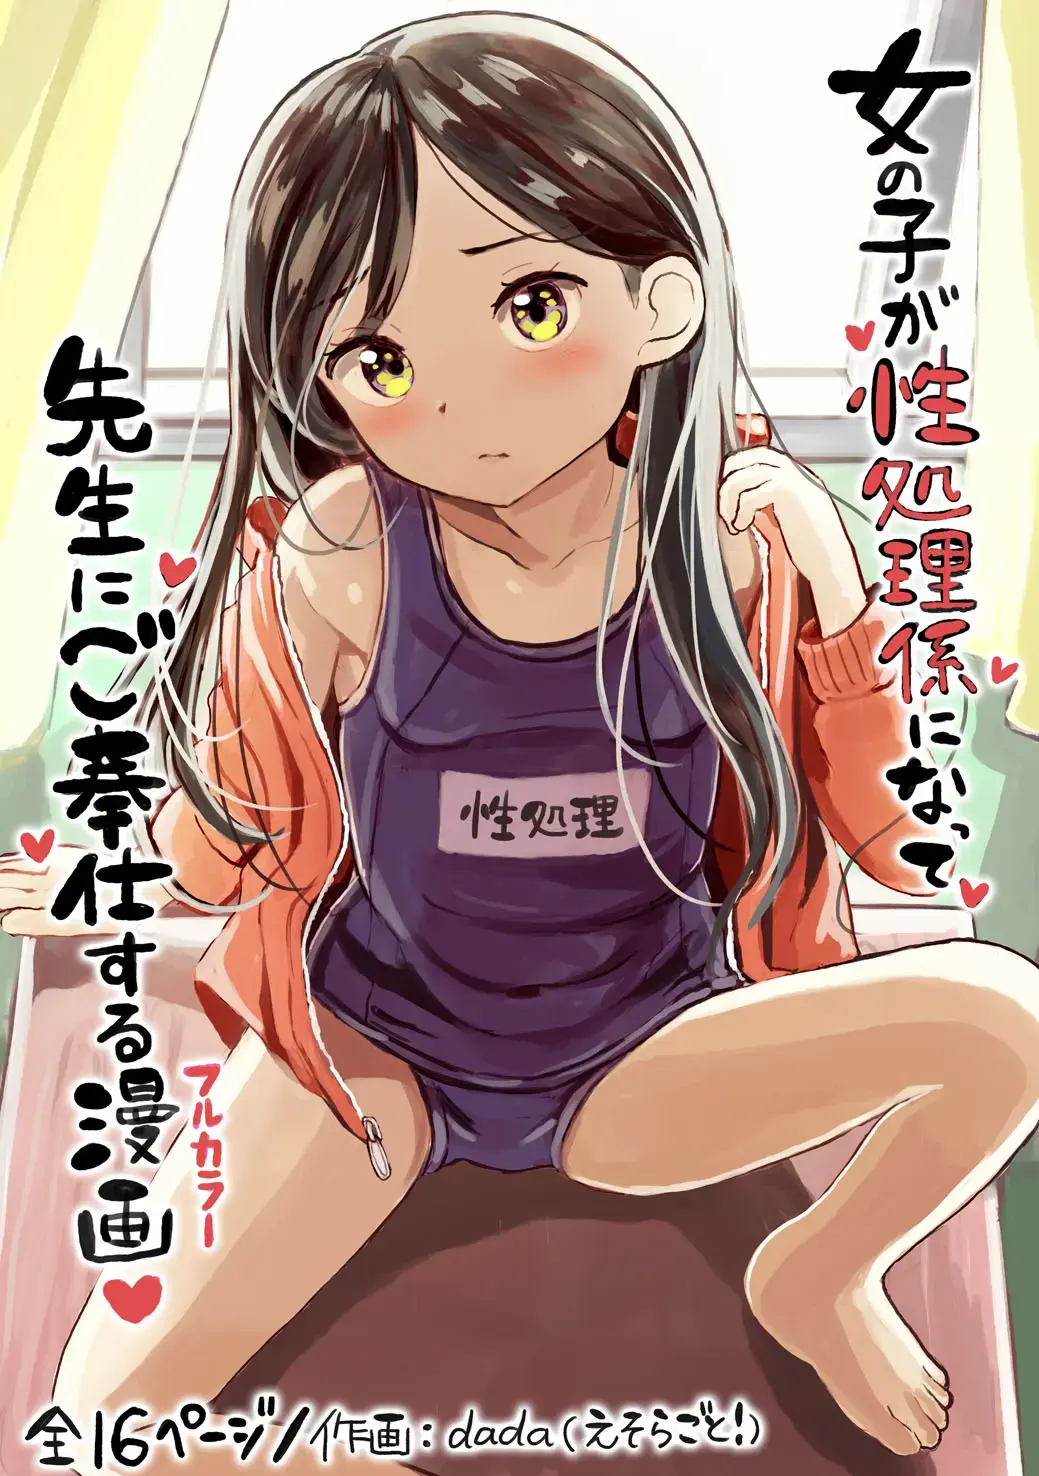 Read [Dada] Onnanoko ga Seishori Gakari ni Natte, Sensei ni Gohoushi Suru Manga - Fhentai.net